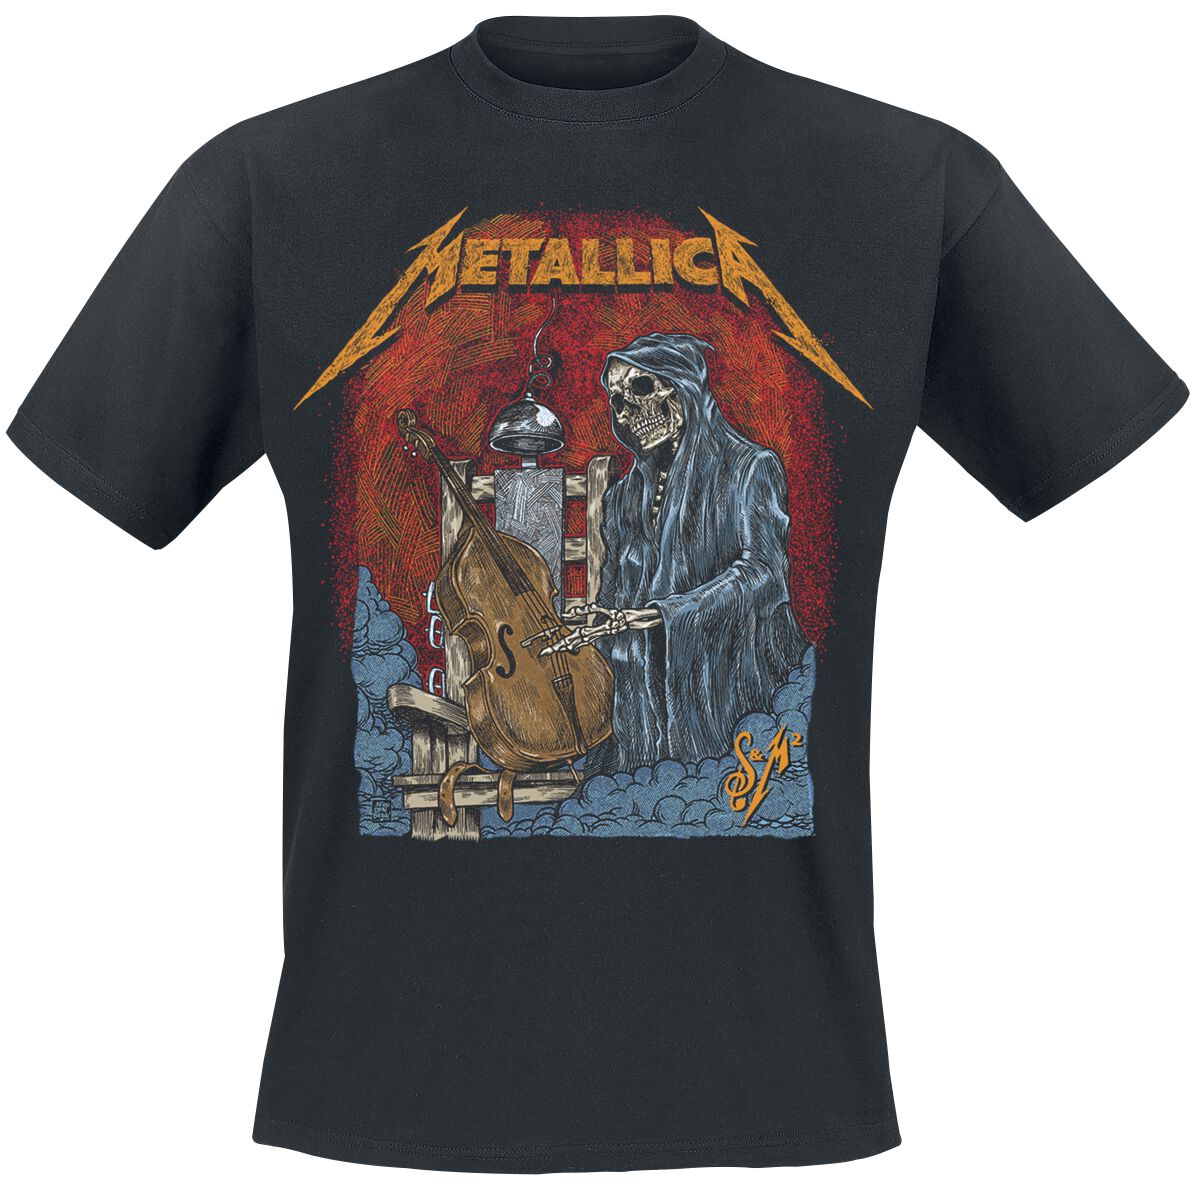 Metallica T-Shirt - S&M2 Cello Reaper - S bis 5XL - für Männer - Größe 5XL - schwarz  - Lizenziertes Merchandise!